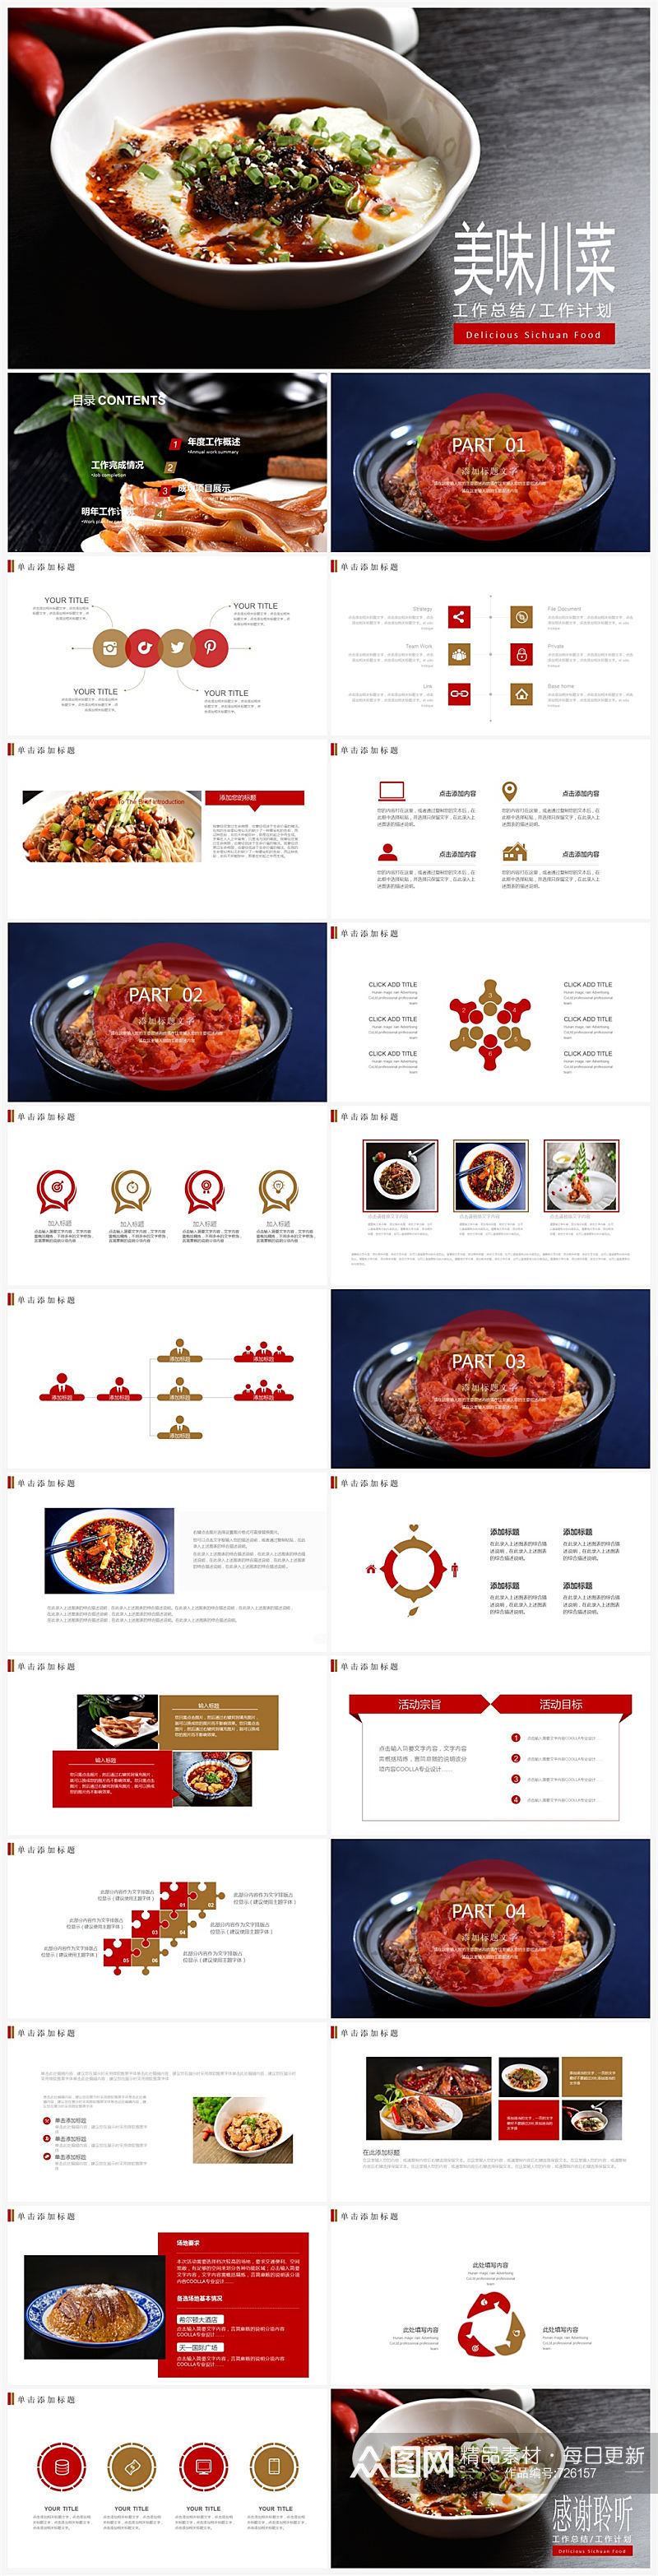 中国传统美食文化美味川菜PPT素材